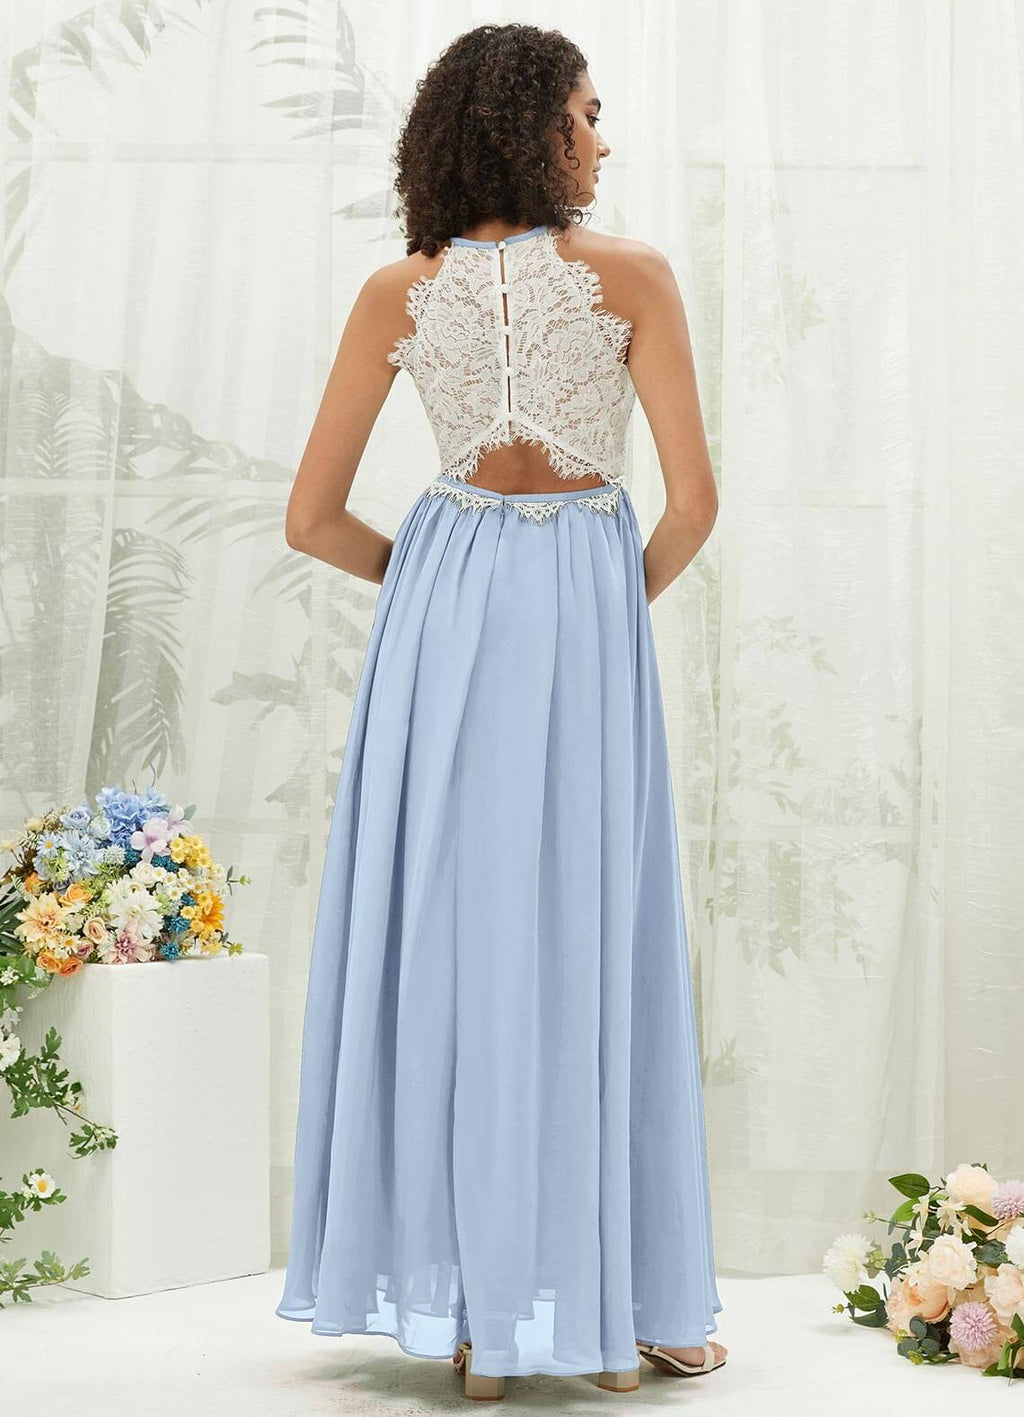 NZ Bridal Cornflower Blue Lace Top Chiffon Bridesmaid Dress TC0426 Heidi a